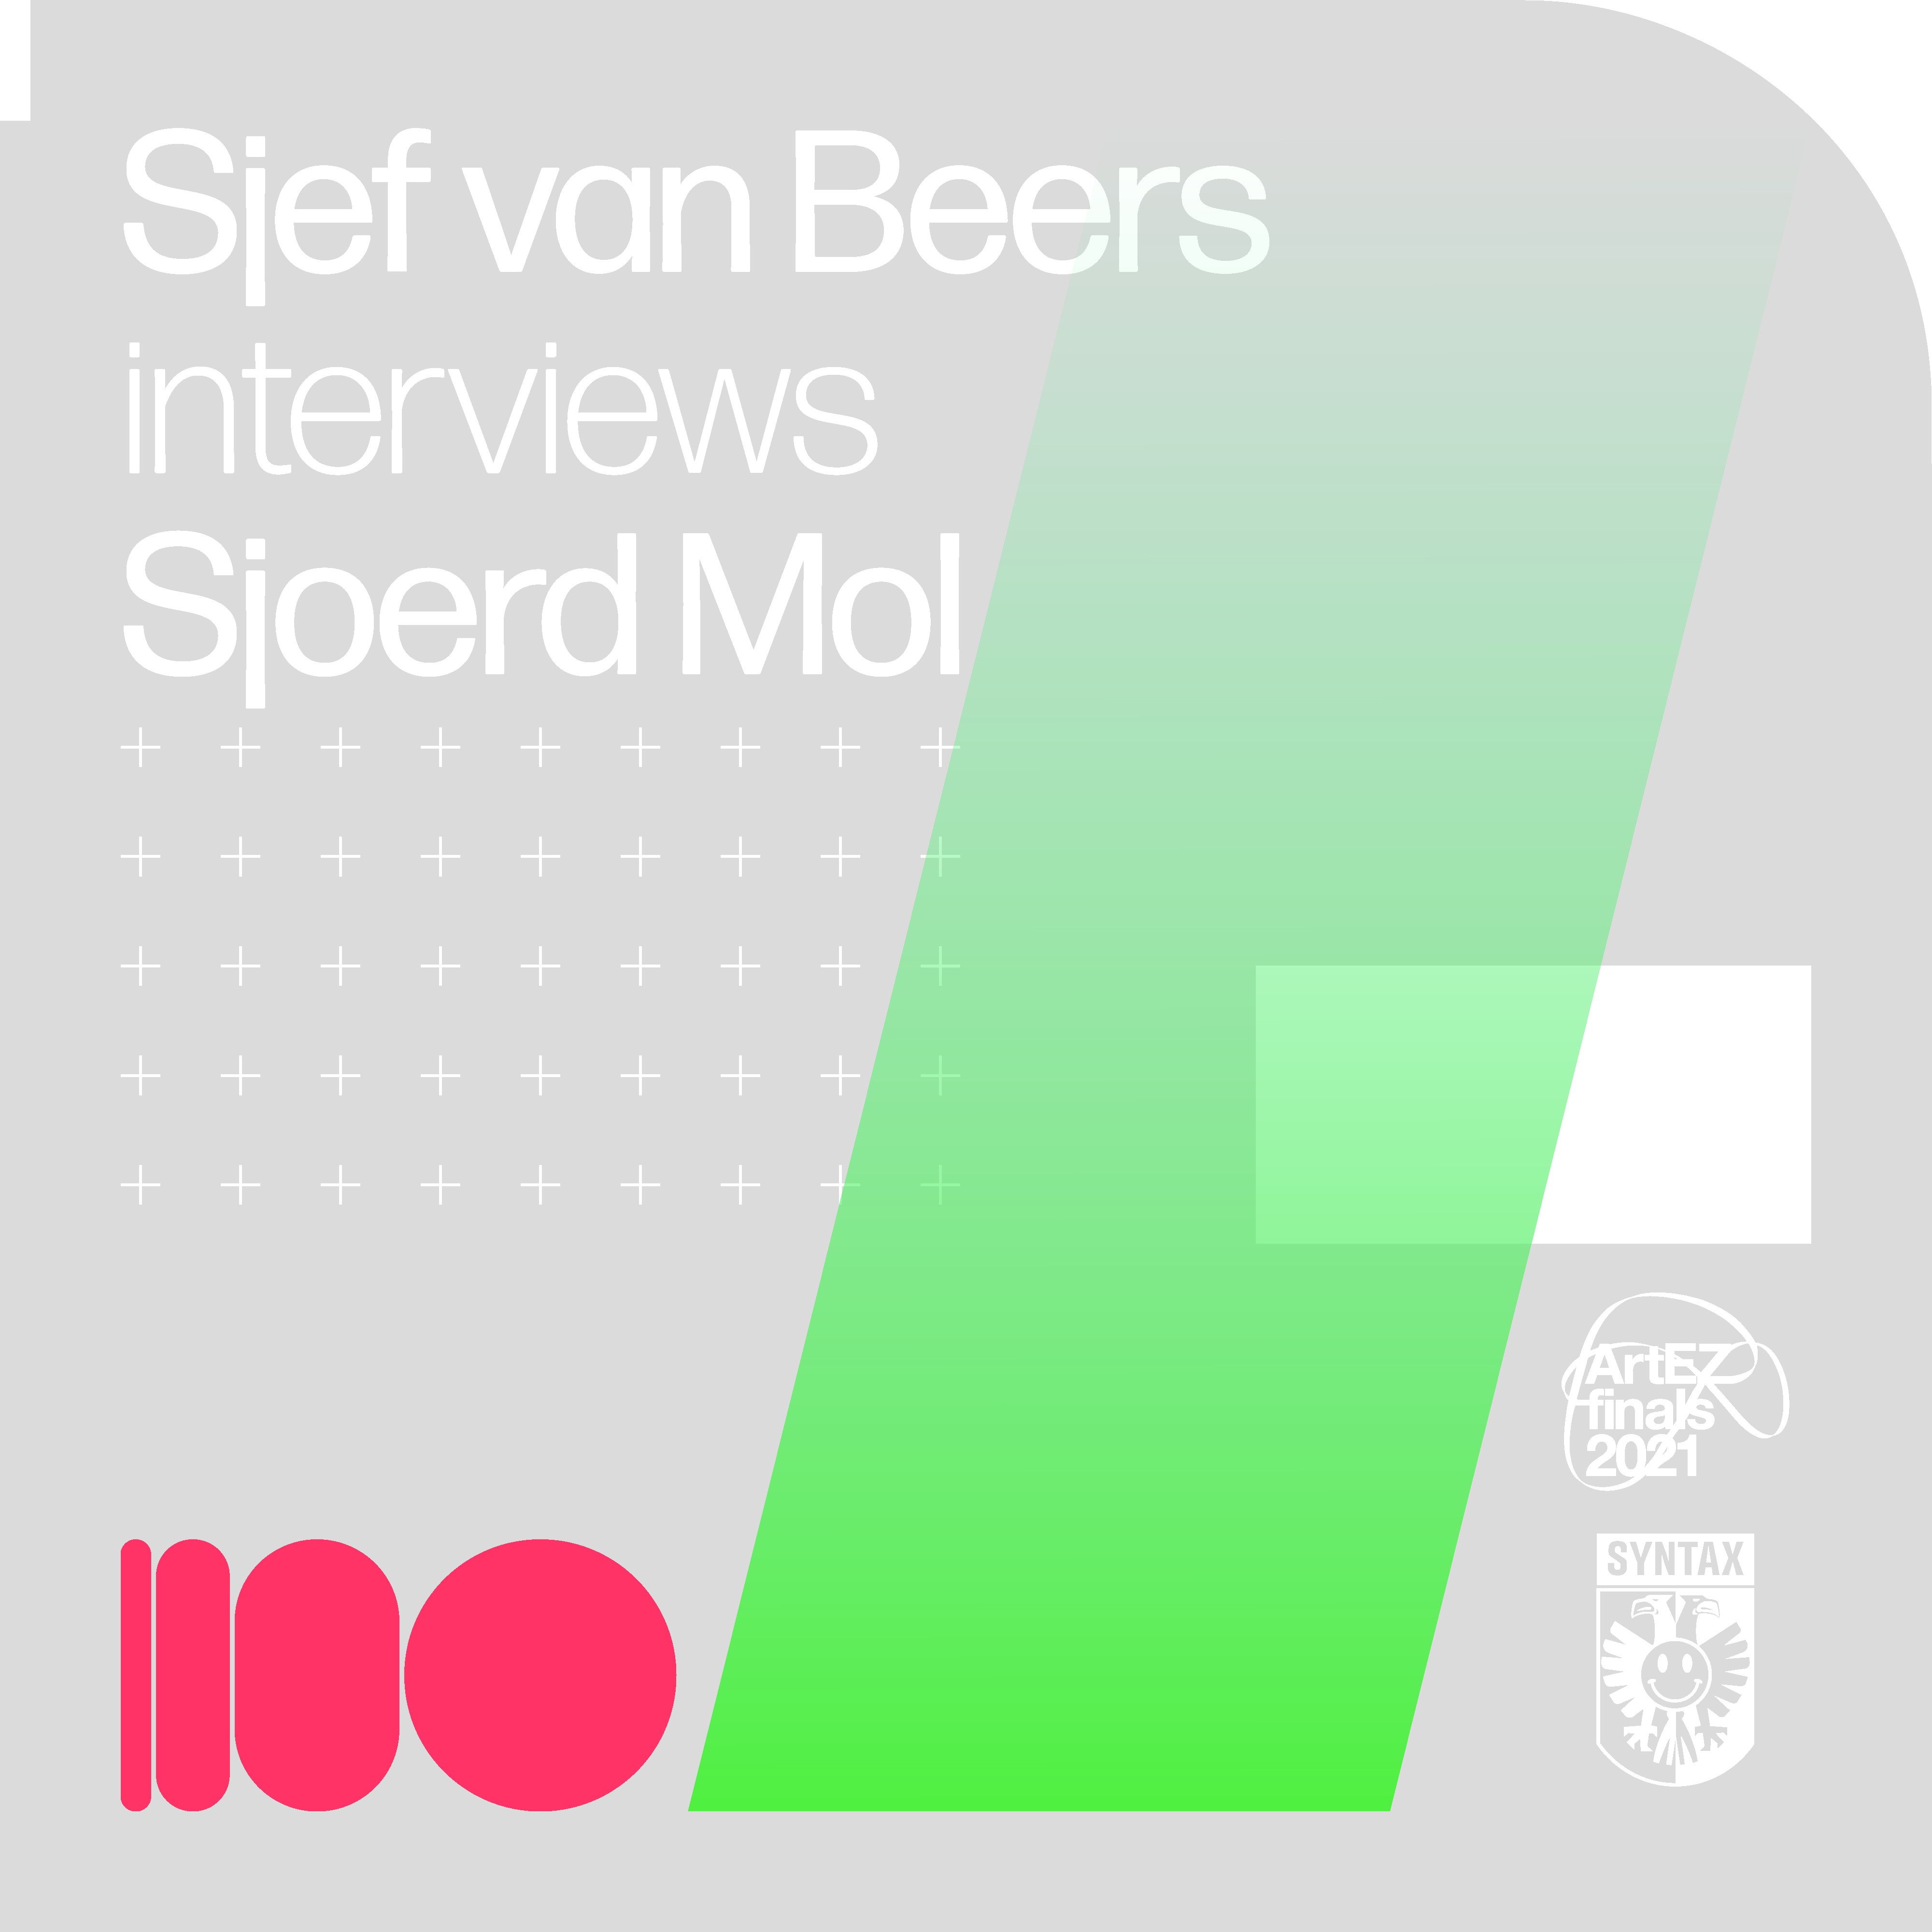 Sjef van Beers interviews Sjoerd Mol